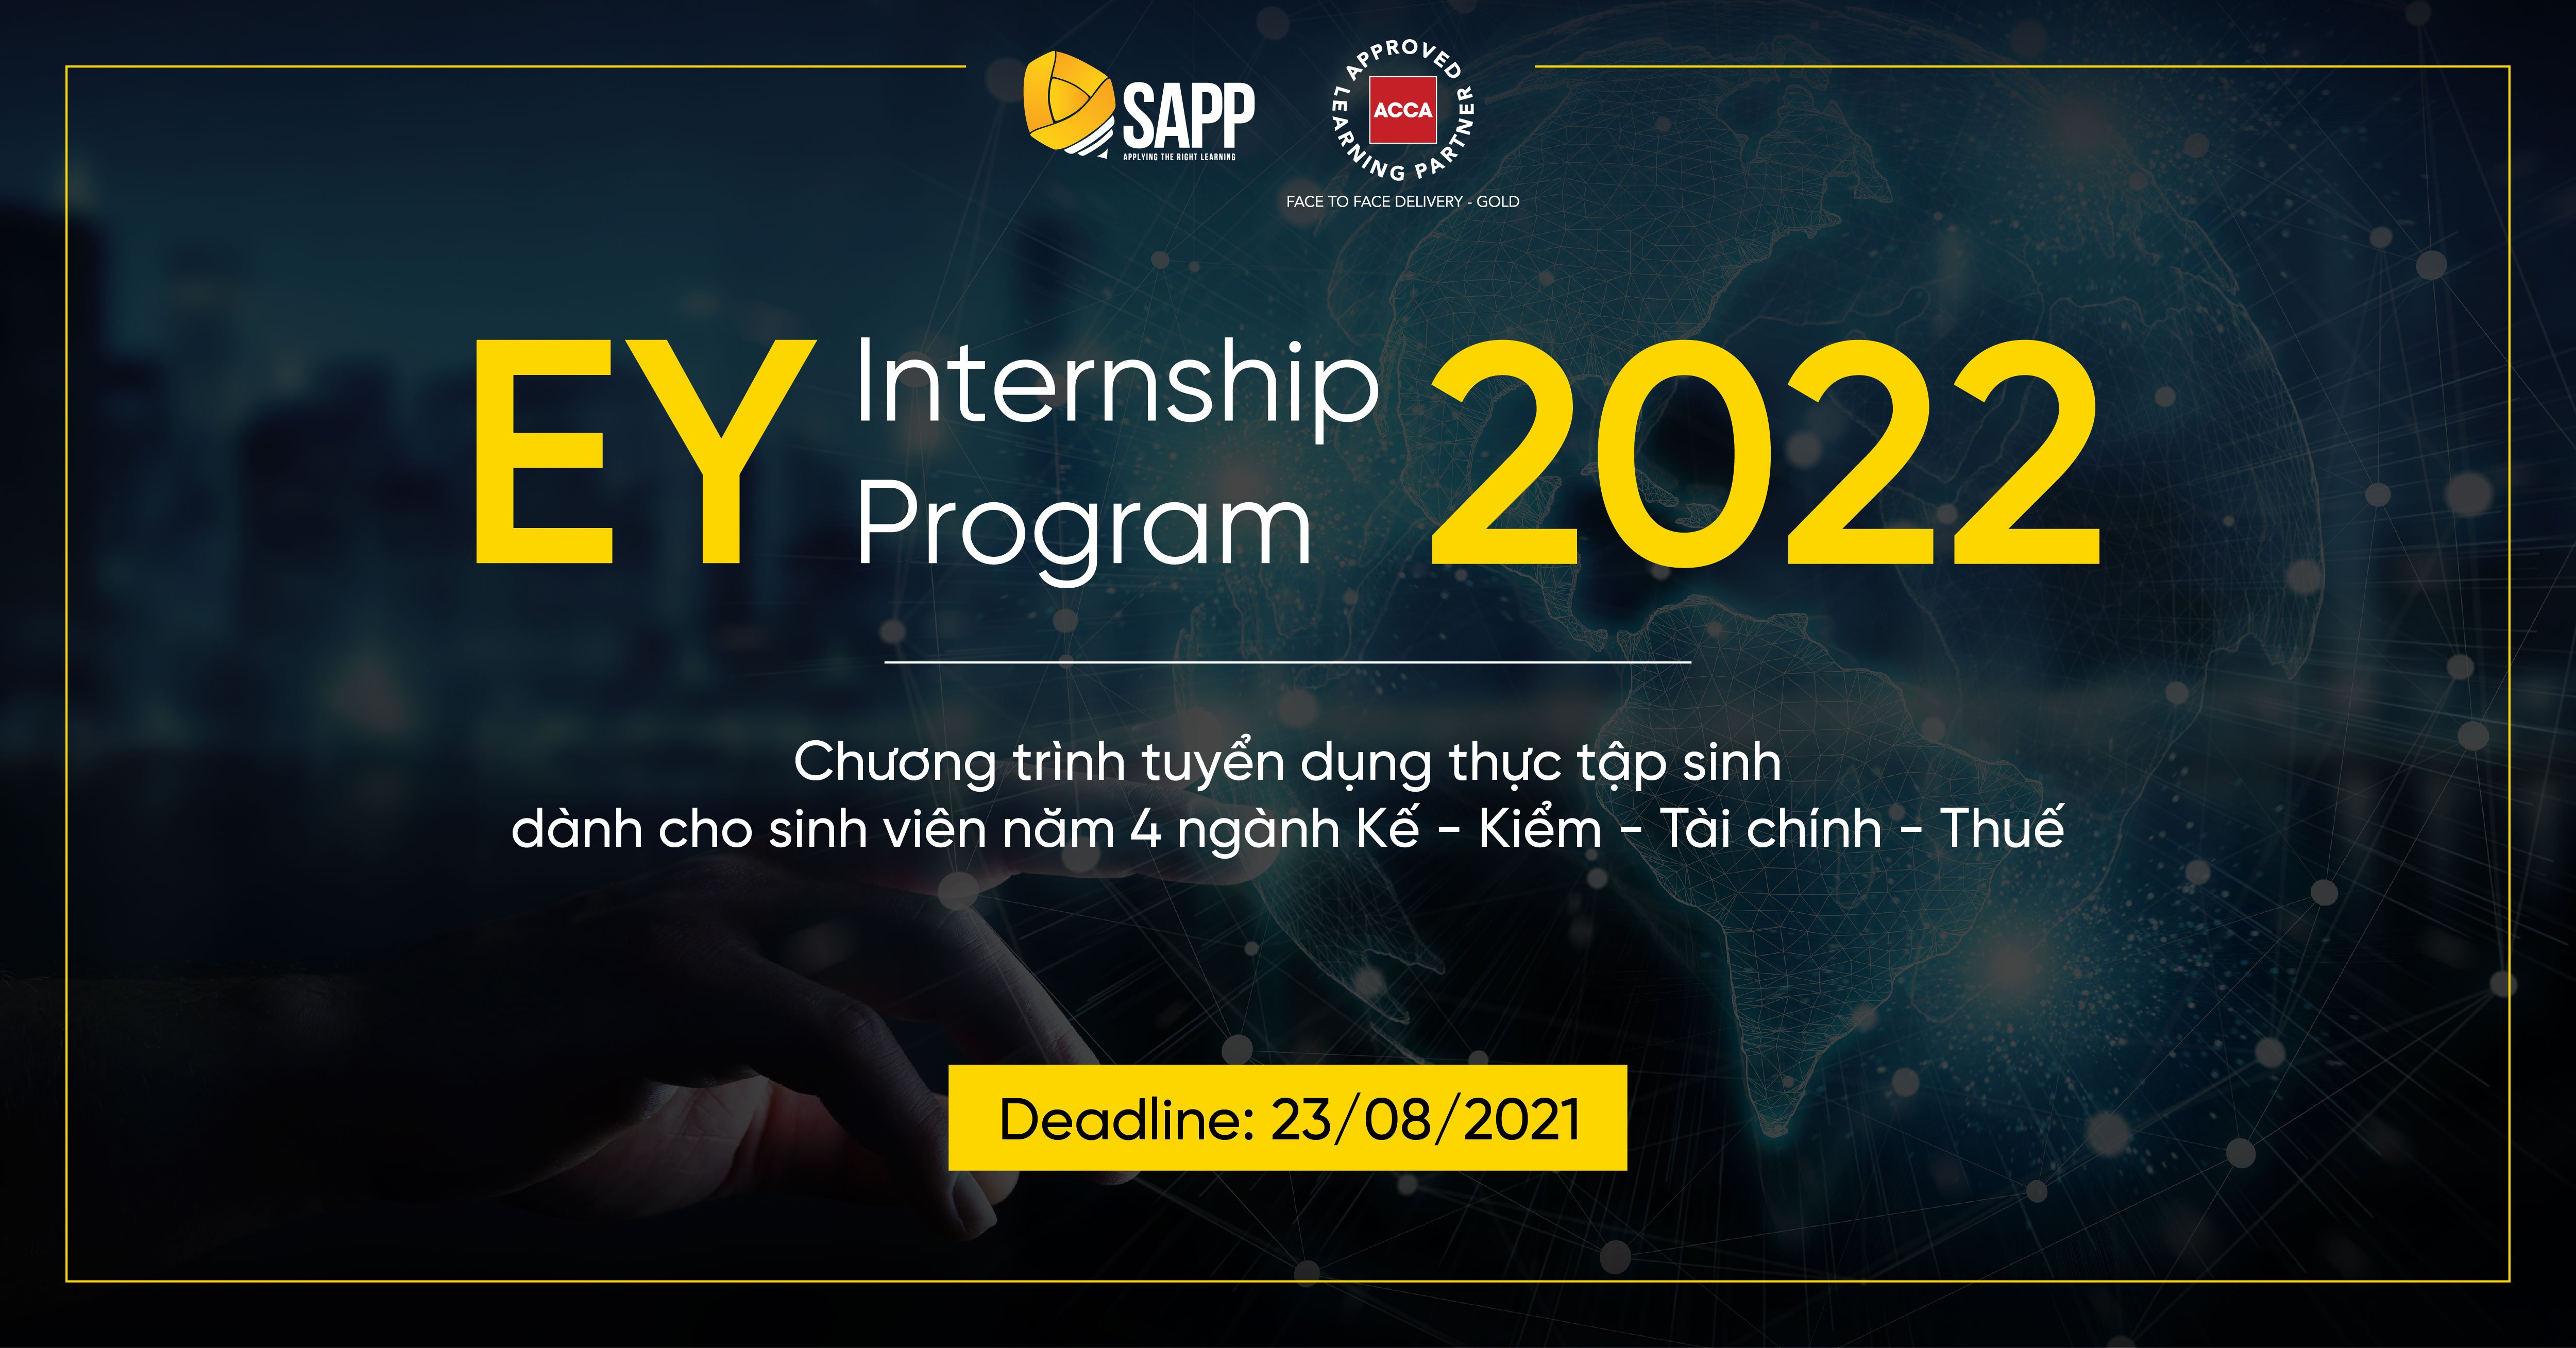 Tổng Quan Về EY Internship Program 2022 Và Hướng Dẫn Điền Application Form